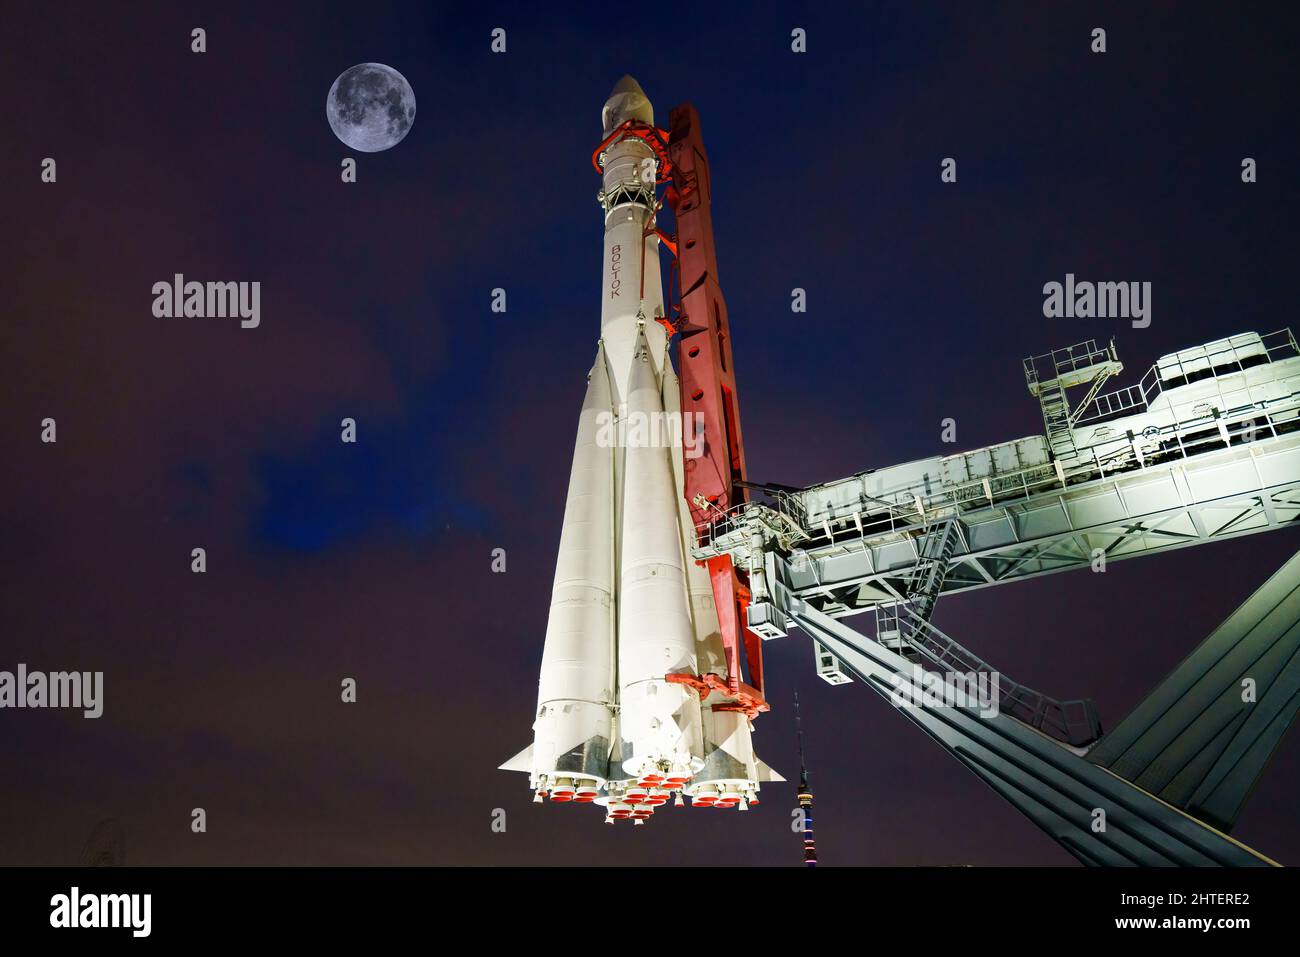 Moscou, Russie - 10 janvier 2022 - le véhicule de lancement spatial soviétique Vostock à l'exposition VDNKh.Fusée spatiale dans le parc VDNH à Moscou, Russie Banque D'Images